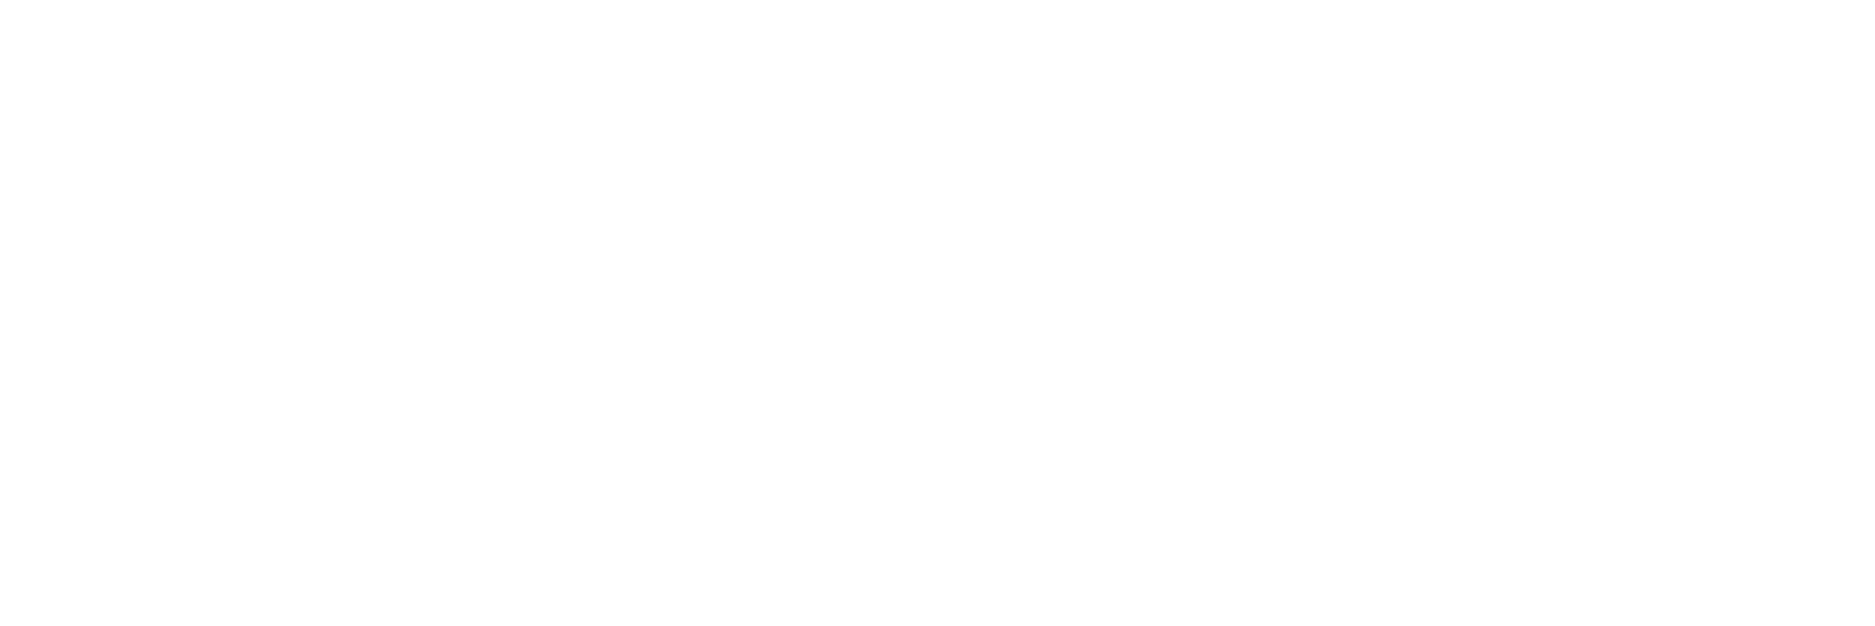 Fedex wit